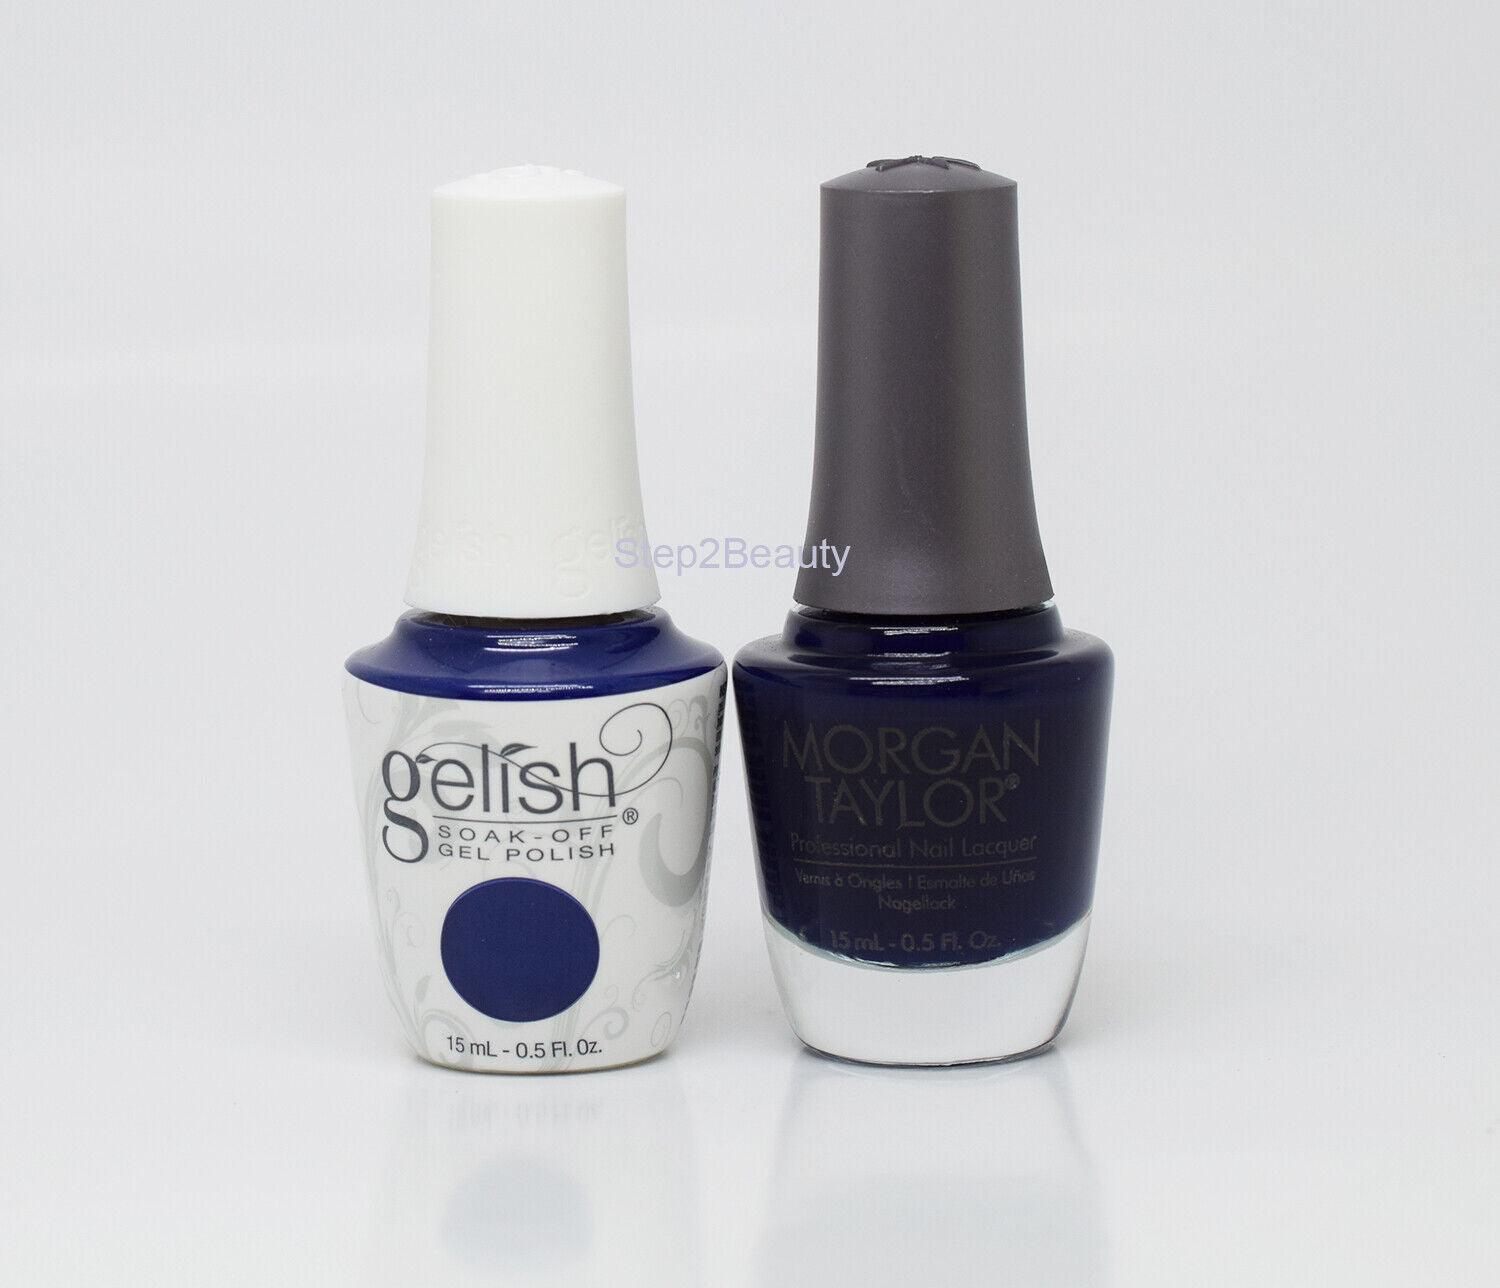 Gelish DUO Soak Off Gel Polish + Morgan Taylor Nail Lacquer - #863 After Dark